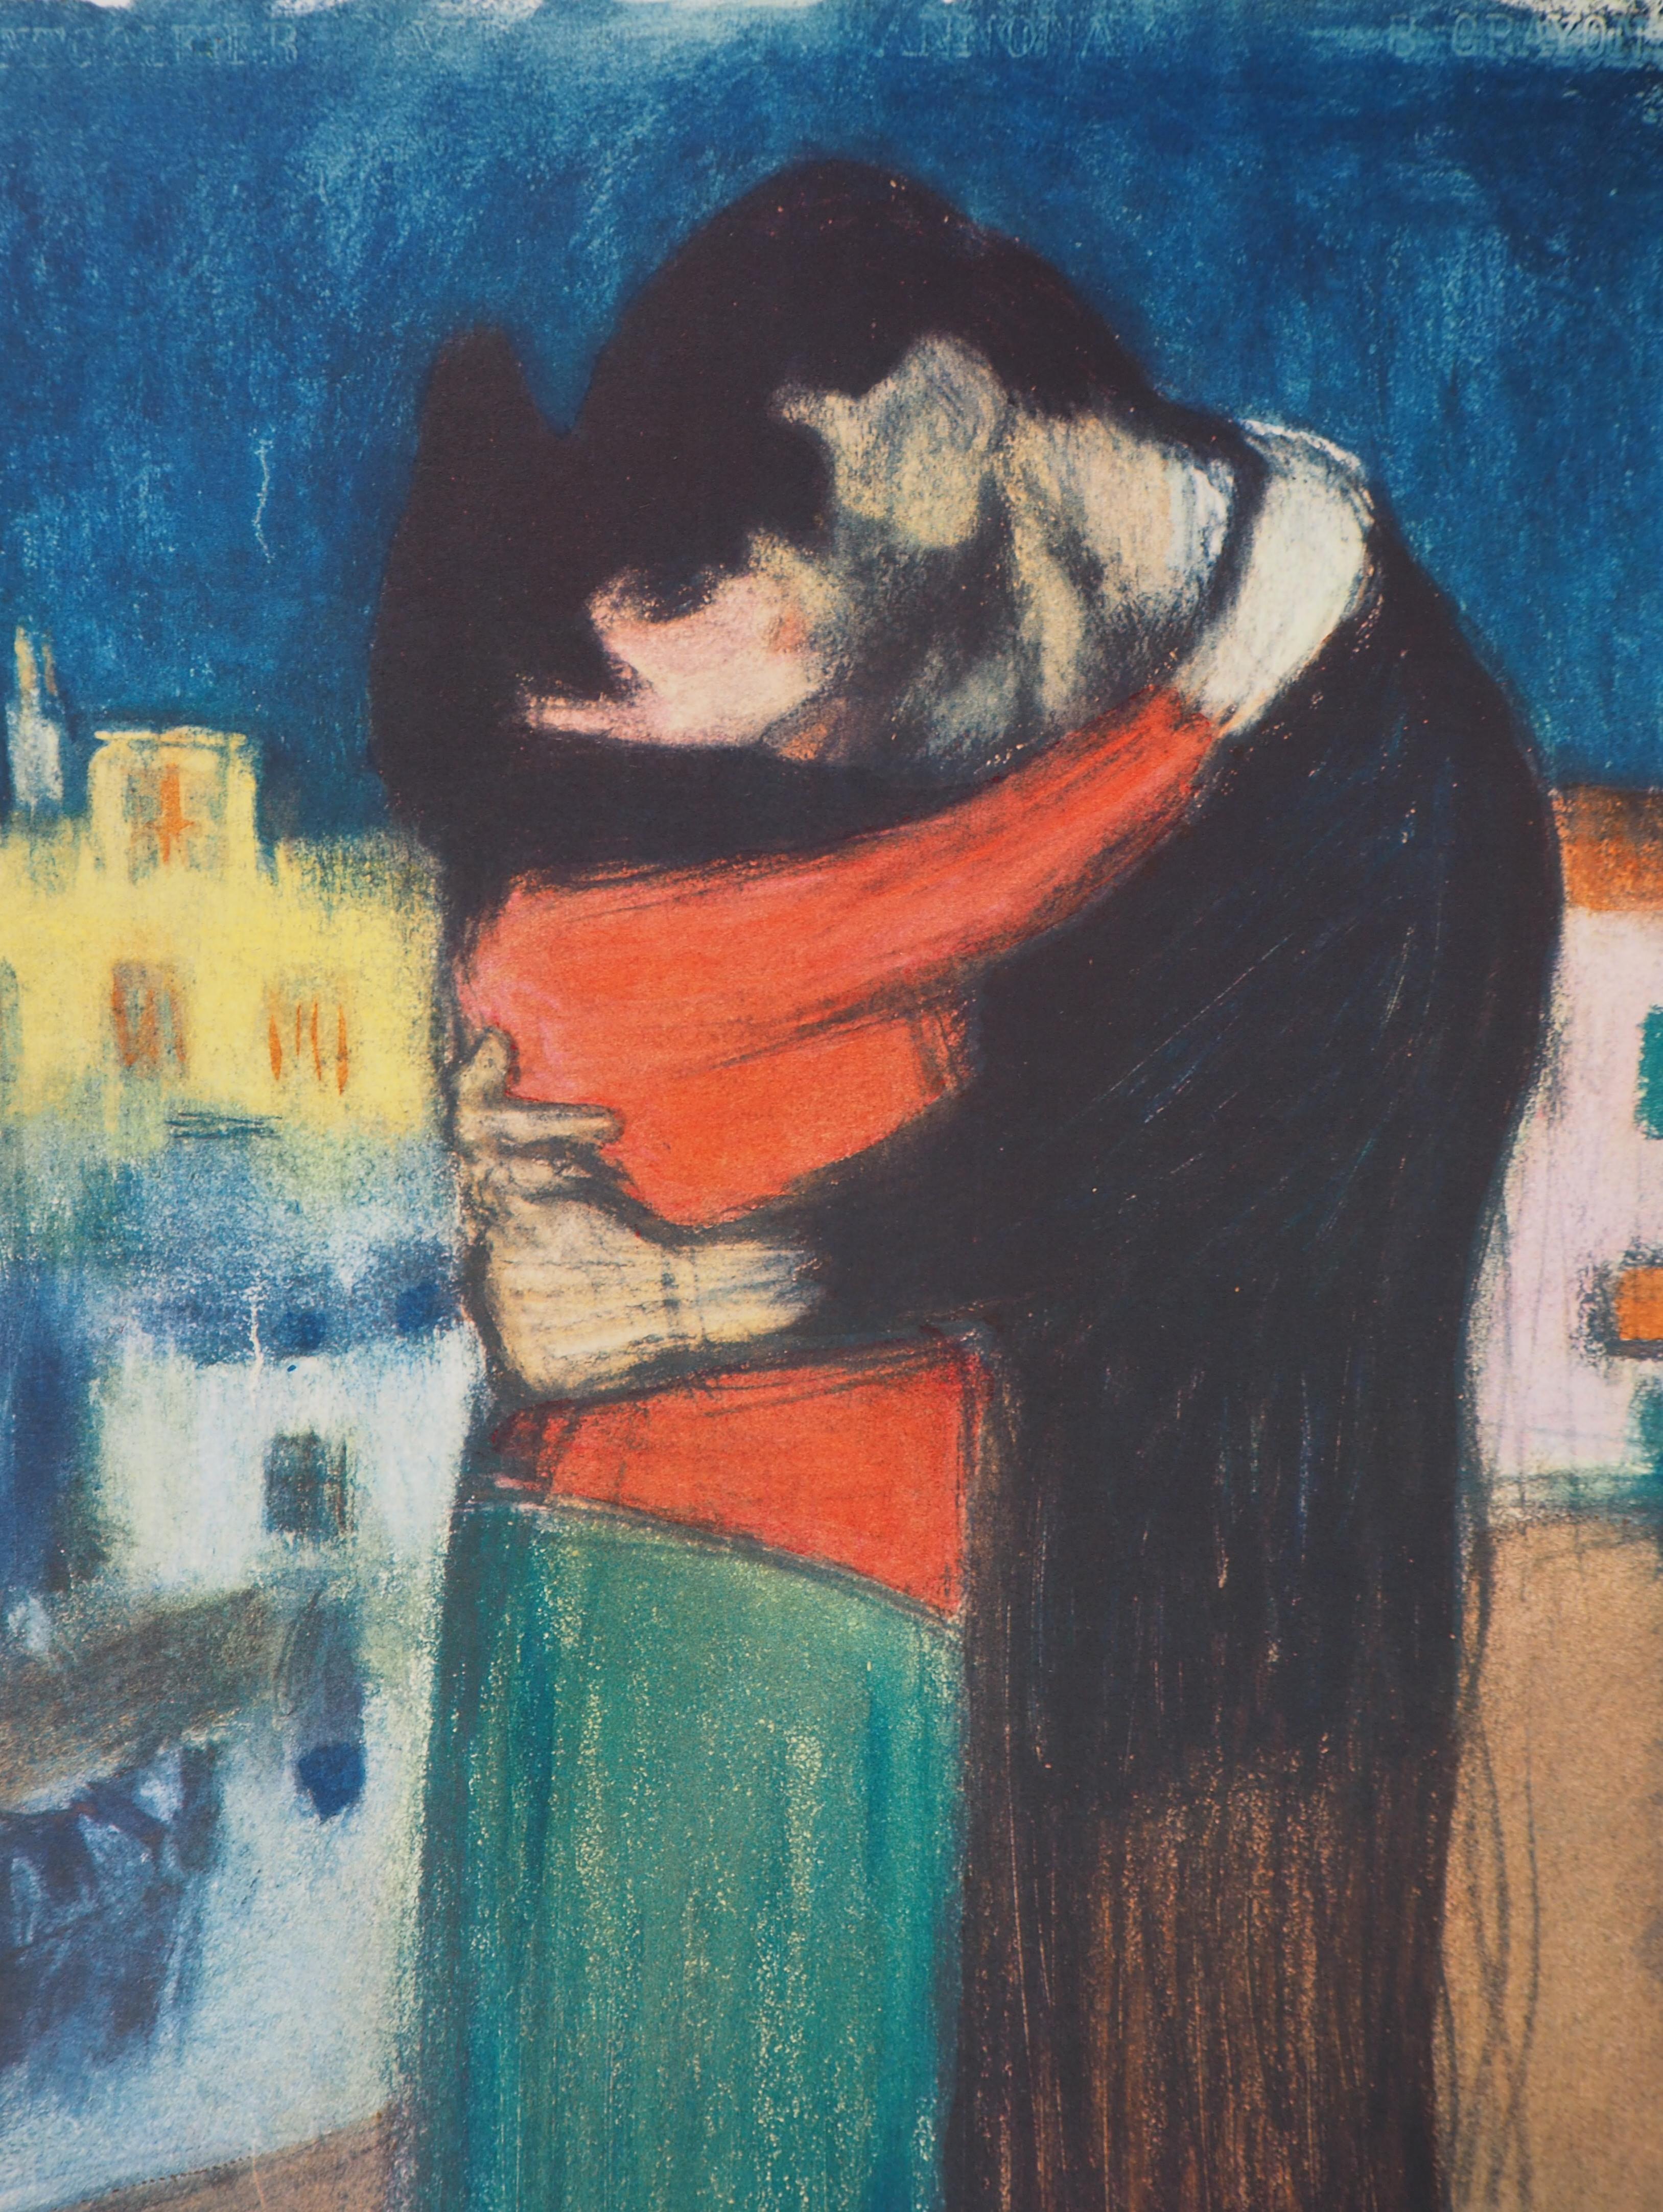 Pablo Picasso (1881-1973) (nach)
Hommage an Toulouse-Lautrec : Verliebtes Paar

Mit Schablone veredelte Lithographie (Jacomet-Verfahren)
Gedruckte Unterschrift auf der Platte
Auf Papier 55,5 x 38 cm
Beglaubigt durch den Stempel des Herausgebers,